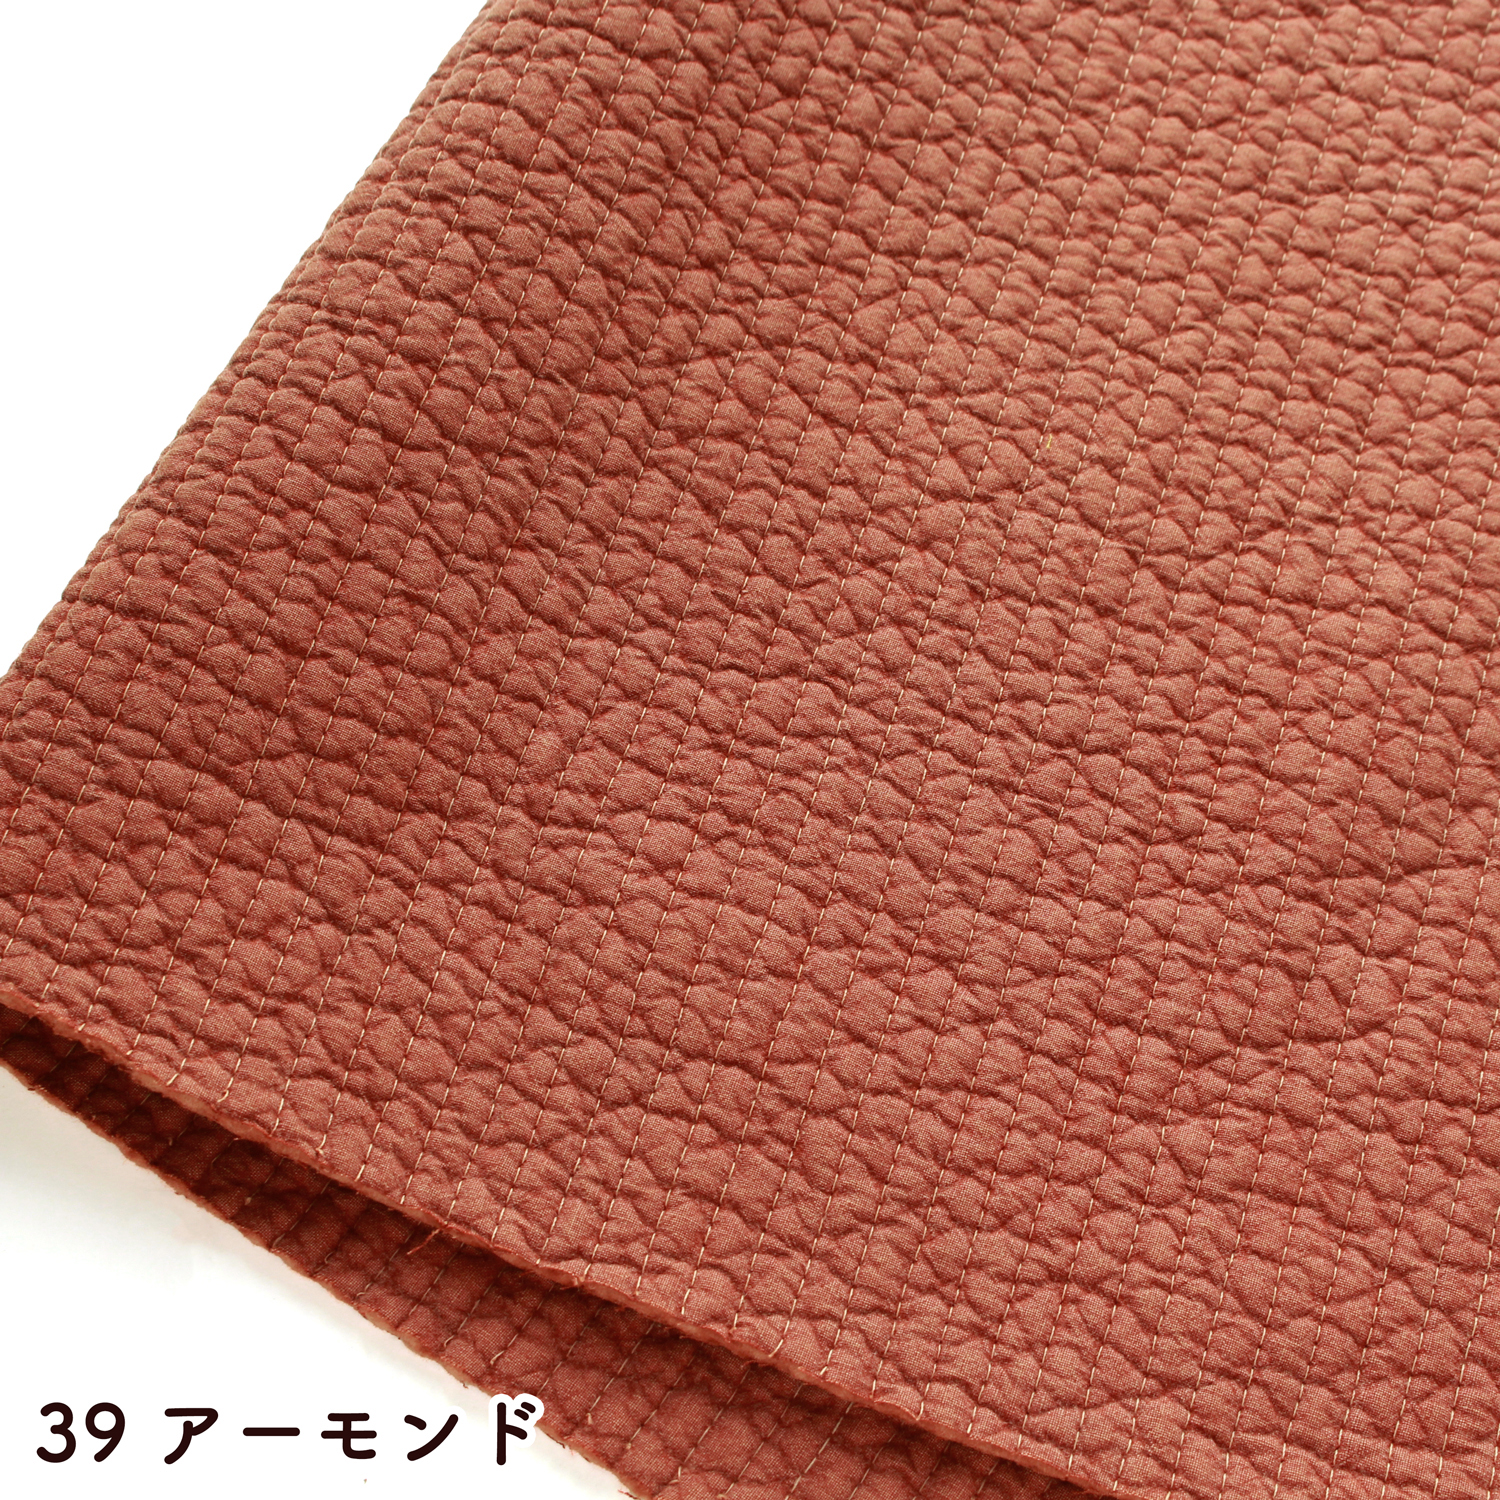 ■NBY307R nubi ヌビ 韓国伝統キルティング生地 巾7mmサイズ 約8m巻 (巻) 7